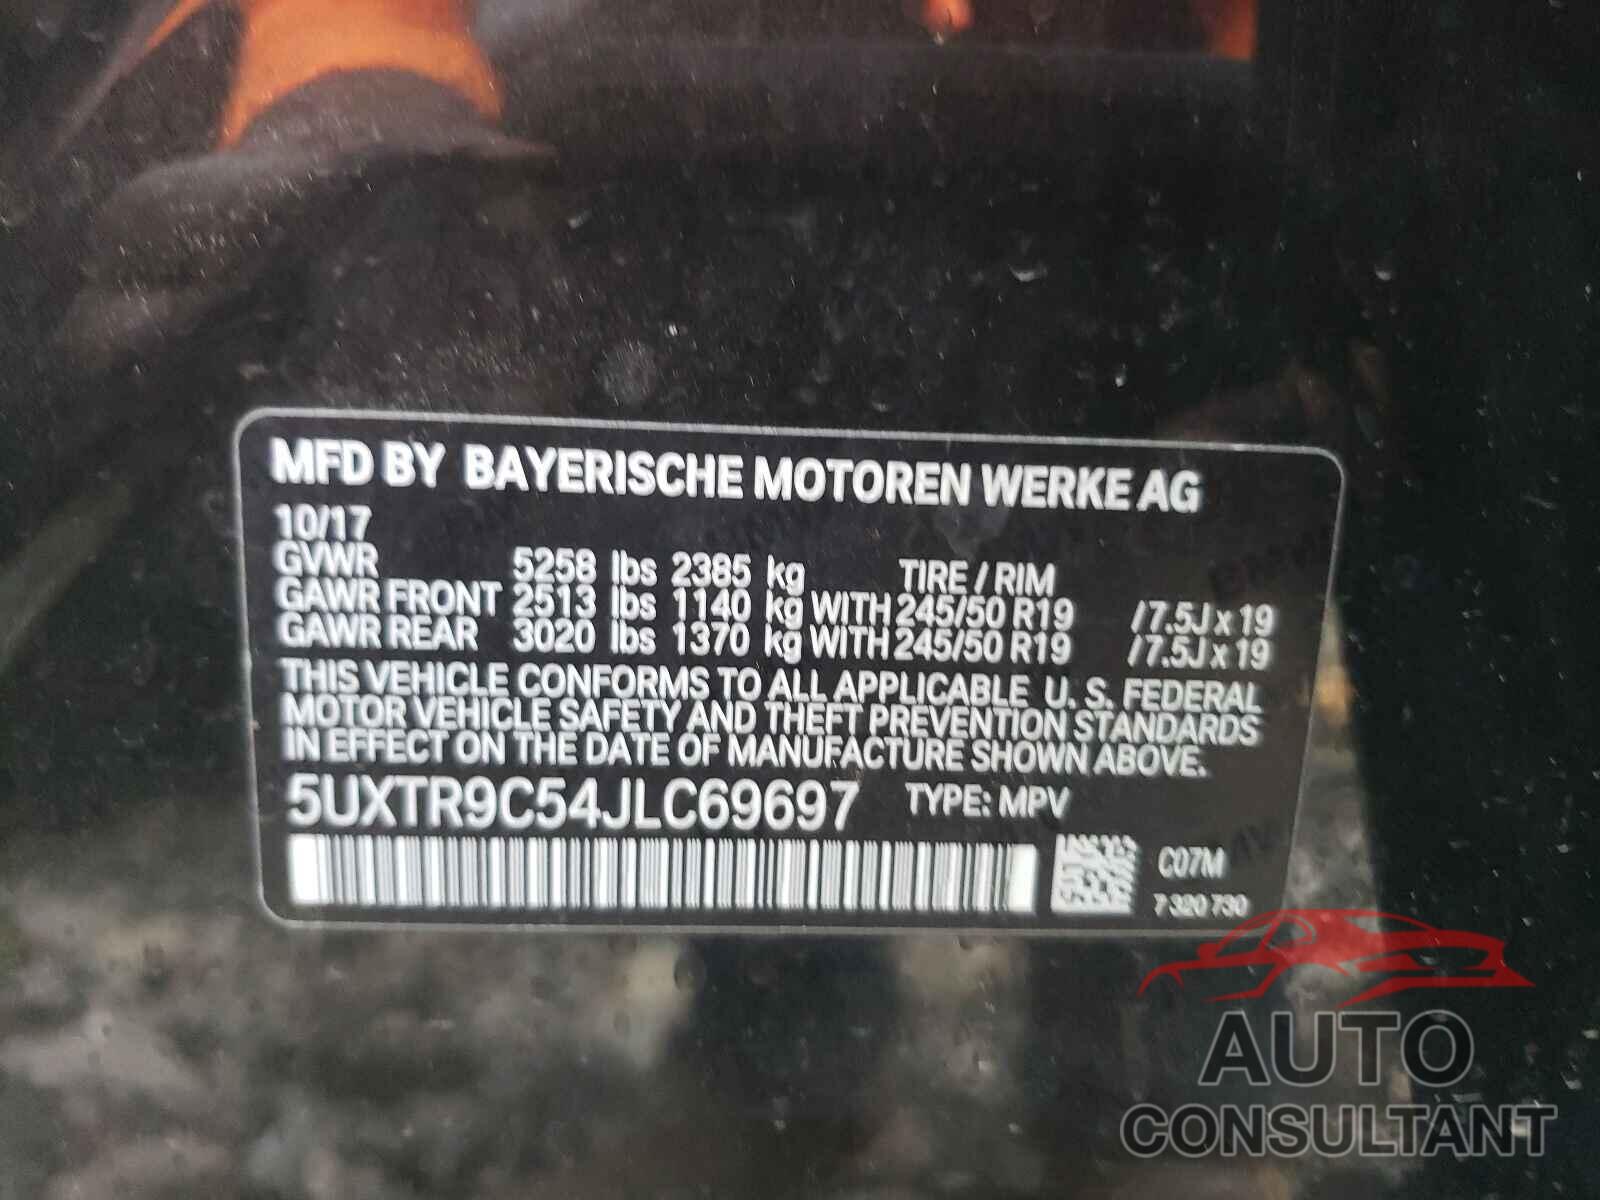 BMW X3 2018 - 5UXTR9C54JLC69697